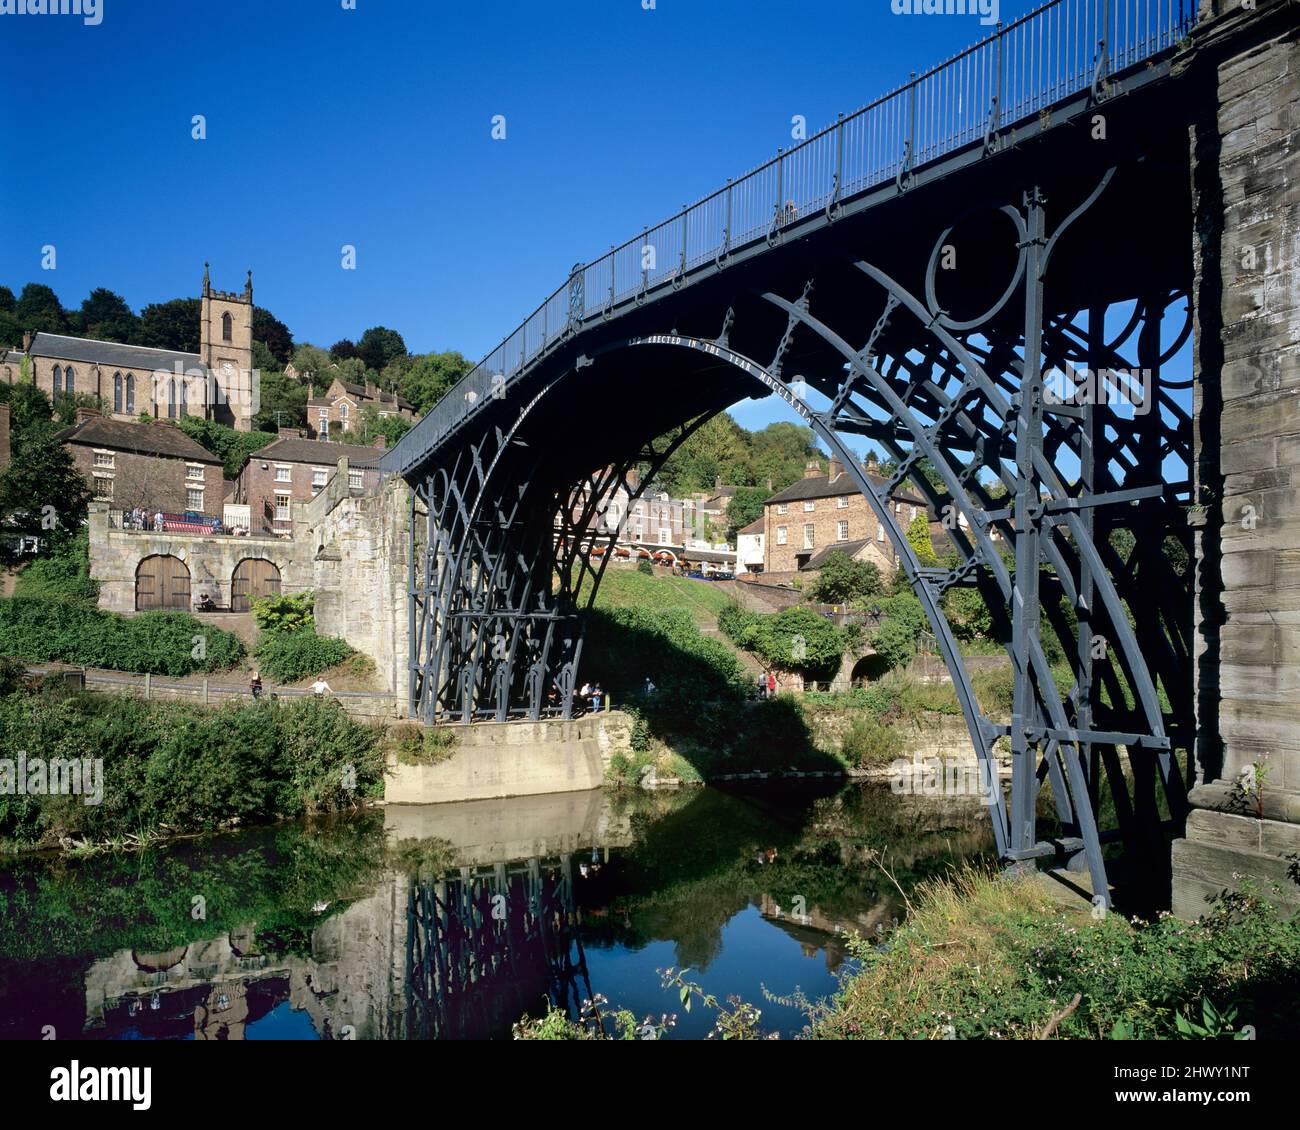 Il primo ponte di ferro del mondo eretto nel 1779 che attraversa il fiume Severn a Coalbrookdale, Ironbridge, Shropshire, Inghilterra, Regno Unito Foto Stock